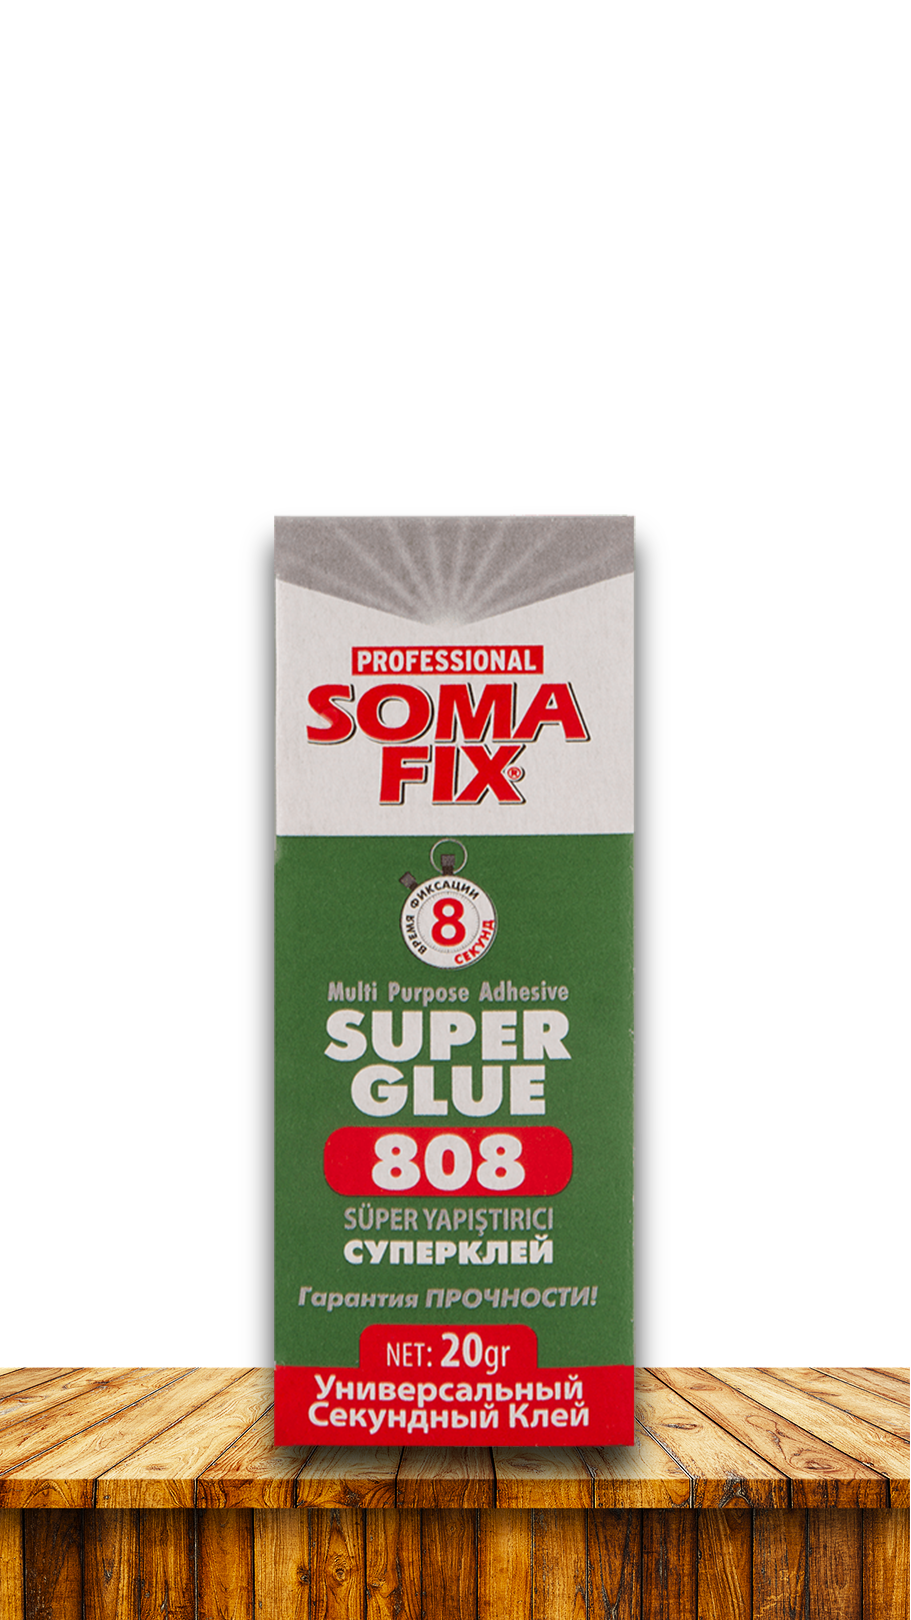 Супер клей SOMA FIX 808 20 грамм S808. Купить от производителя по отличной цене